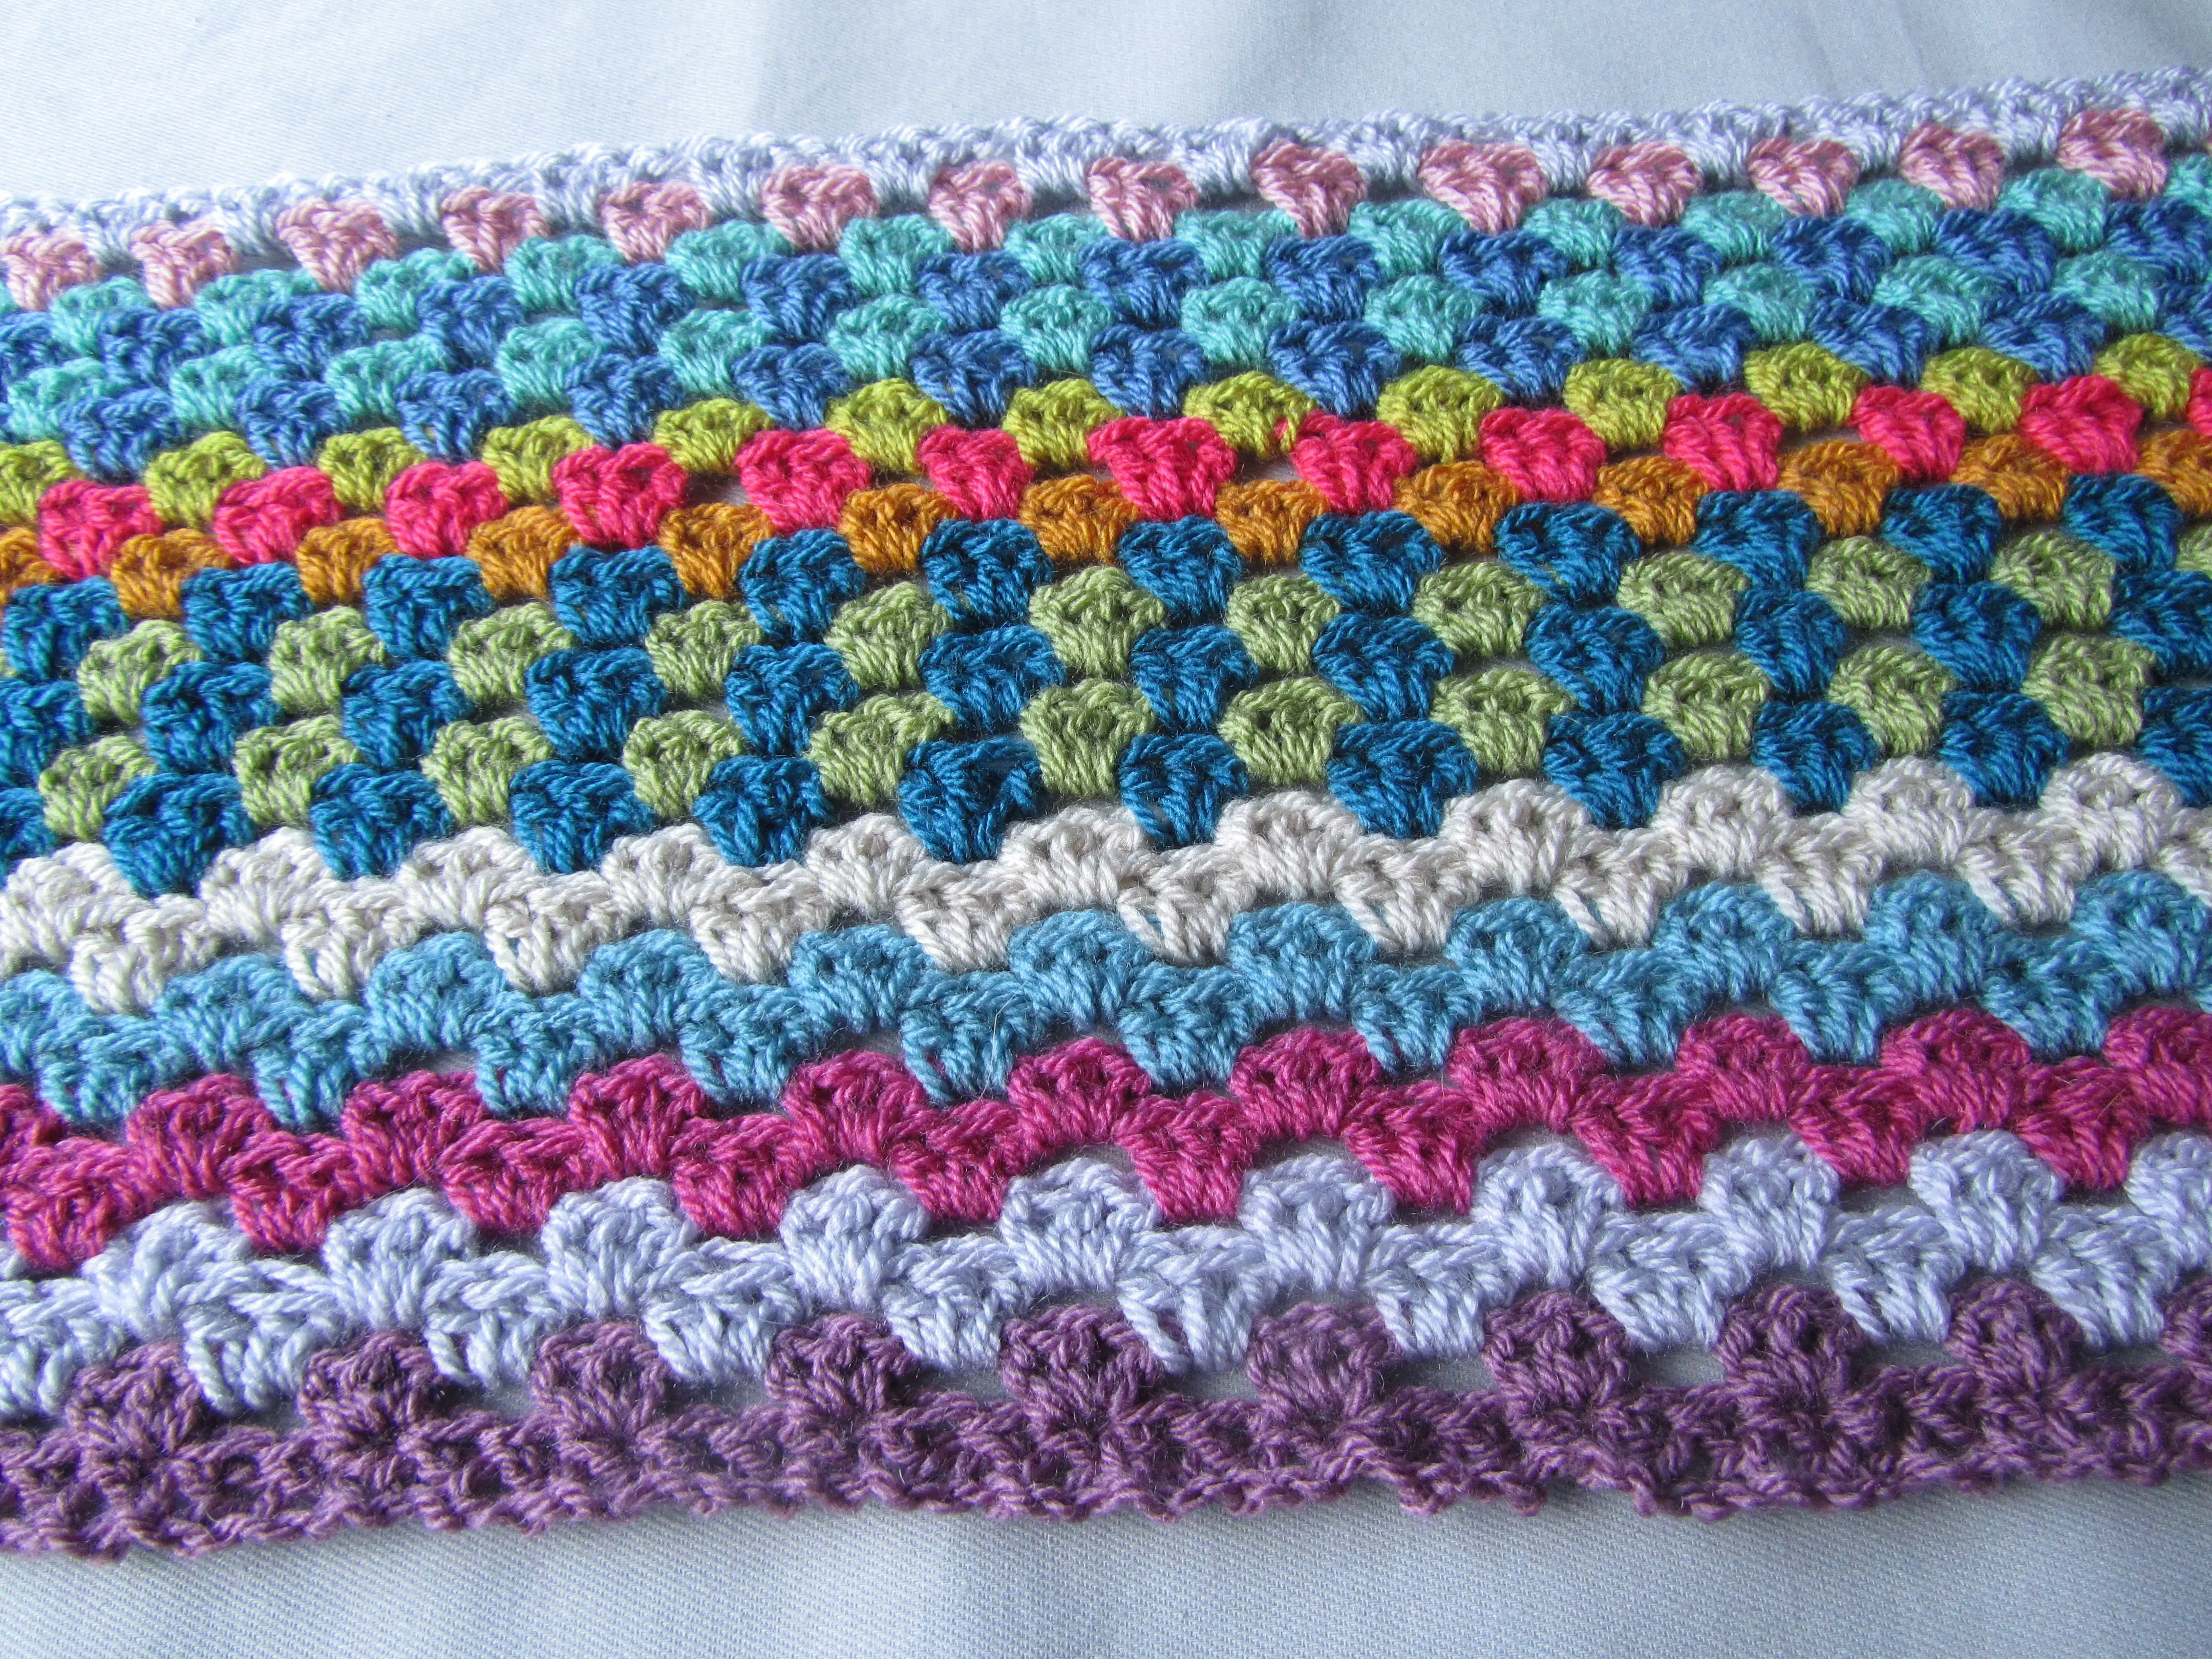 Crochet blanket - 24 rows